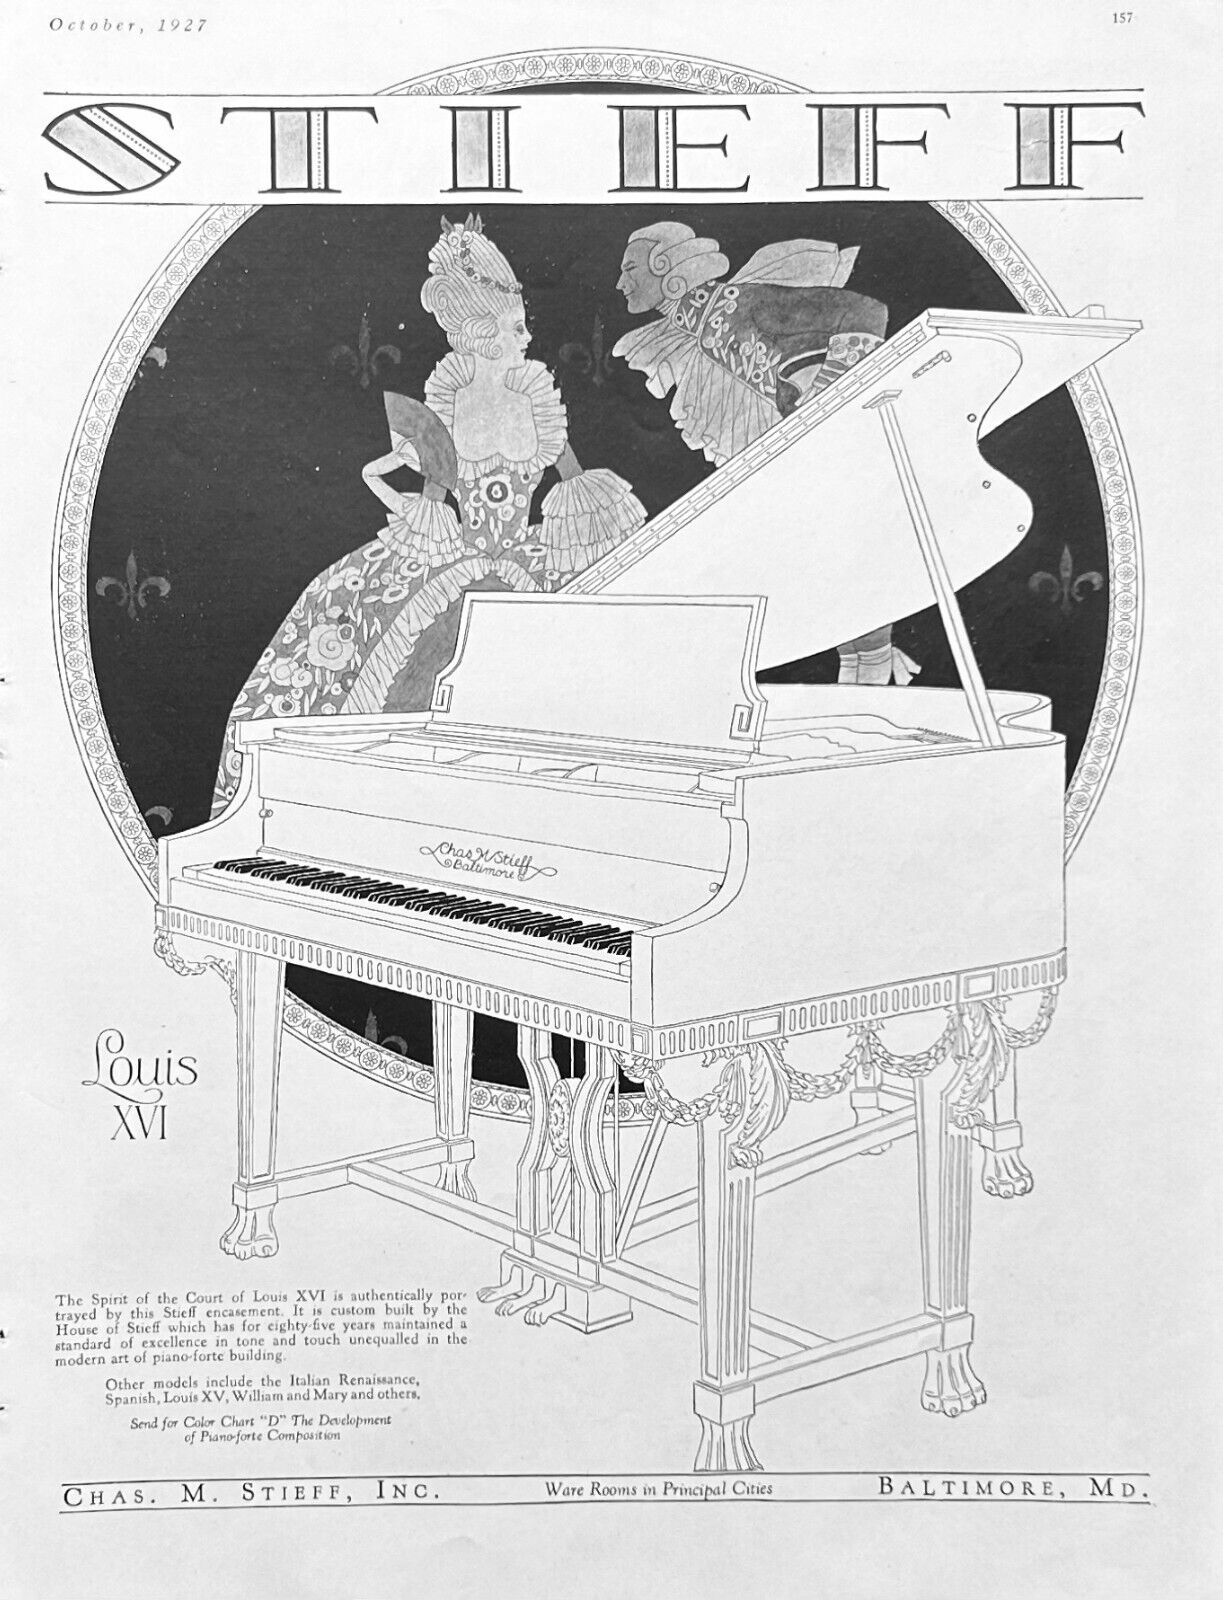 Chas. M. Stieff Co Ad 1927 Baltimore MD Louis XVI Piano